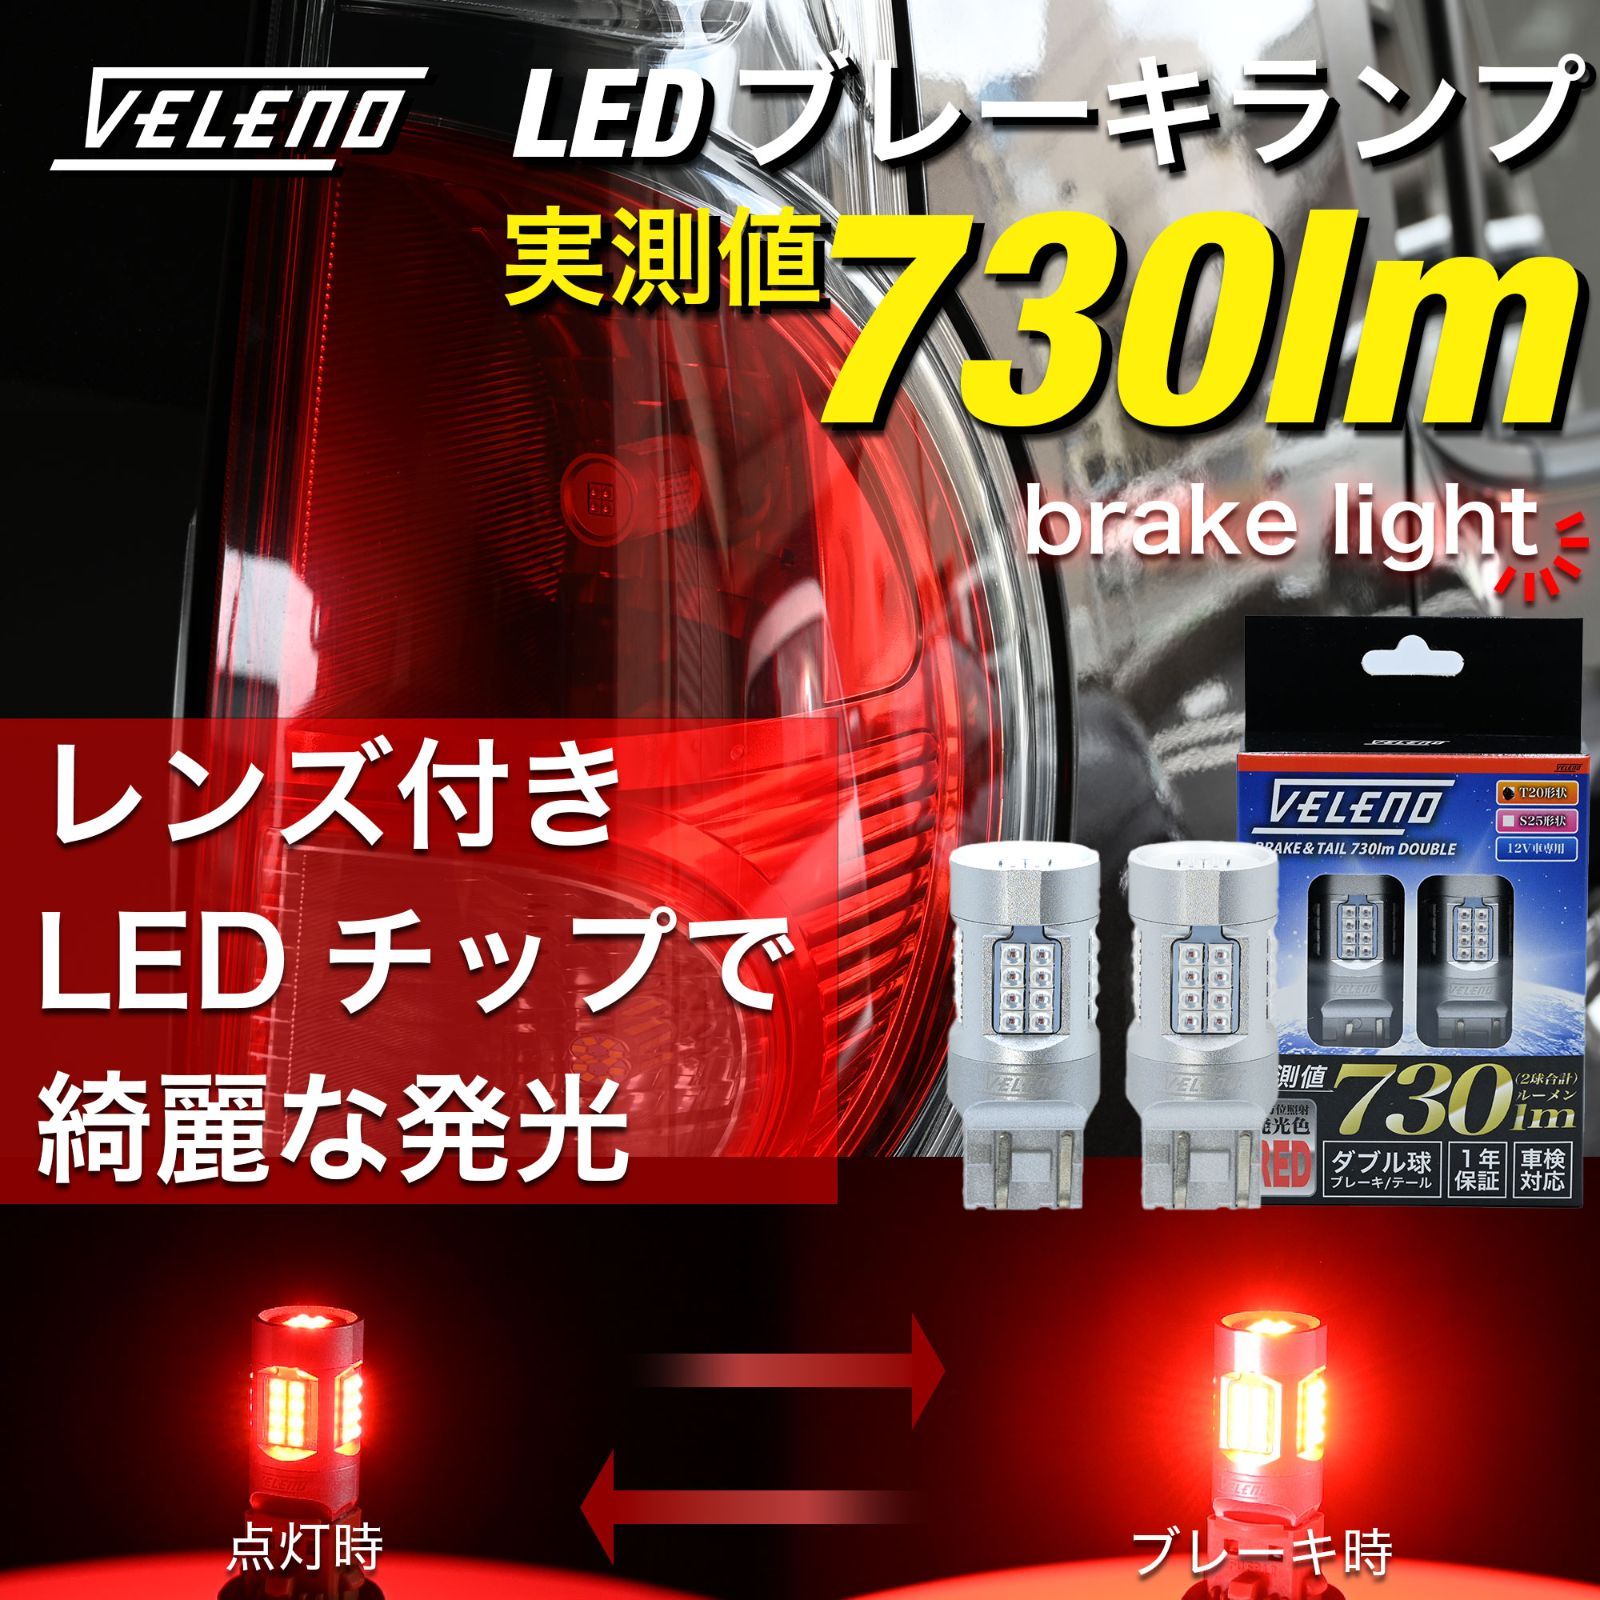 VELENO LED ブレーキランプ 730lm ダブル ブレーキ レッド 赤 ダブル球 ストップランプ ヴェレーノ ベレーノ テールランプ テール  車検対応 T20 / S25 全方位照射 2球セット 車 カスタム 車用 - メルカリ